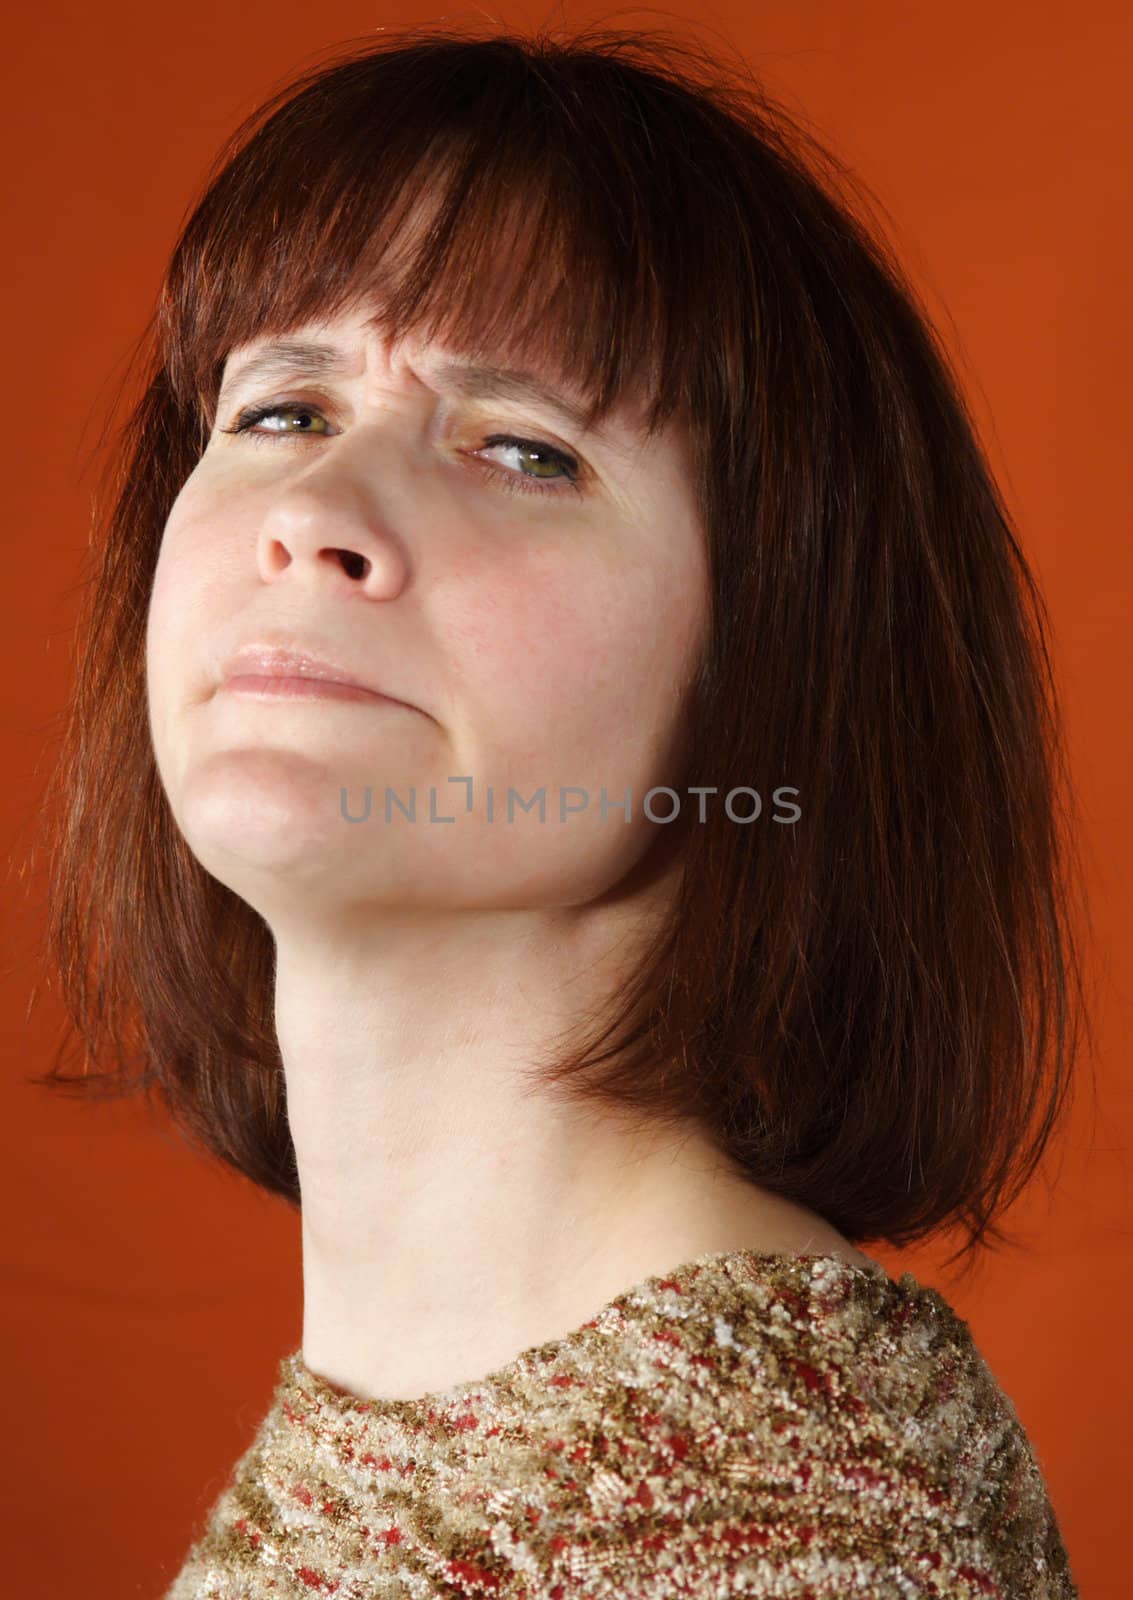 conceited woman closeup portrait